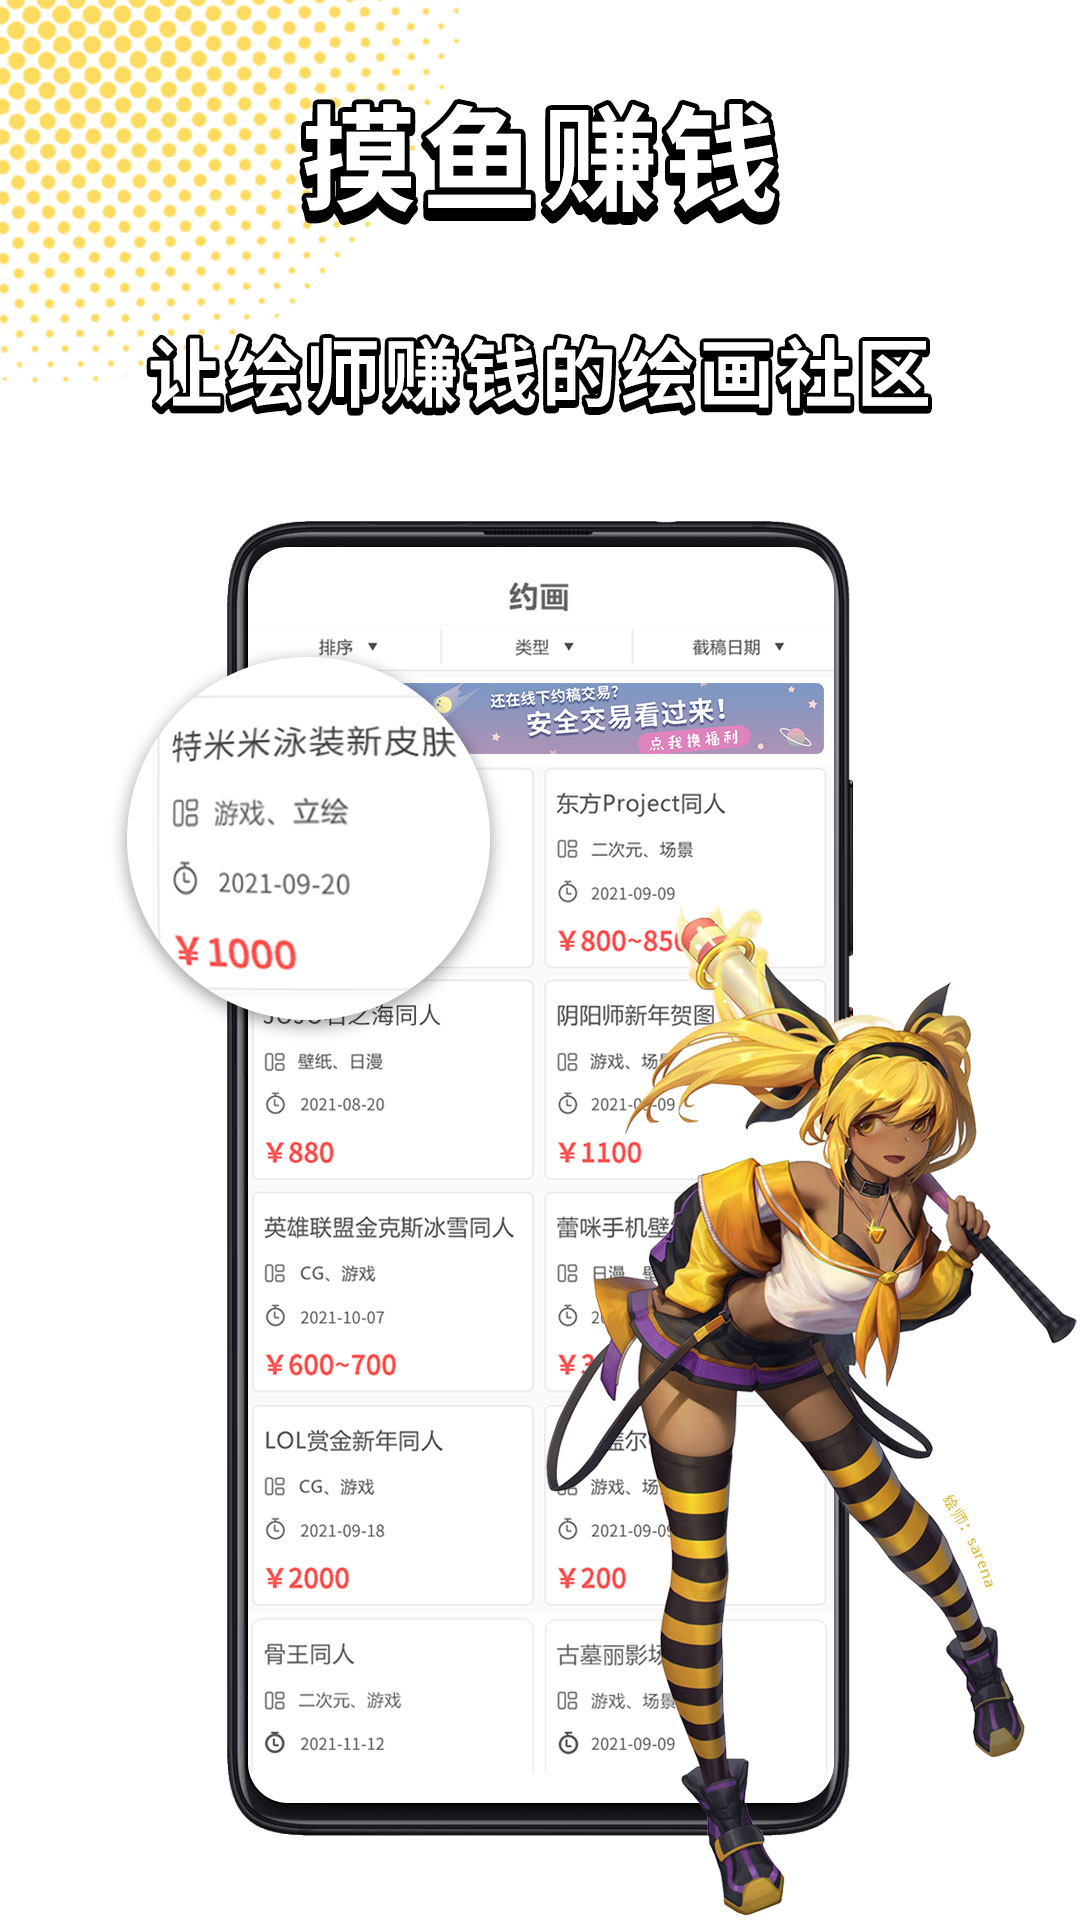 萌JO萌巨武汉开发一款app多少钱